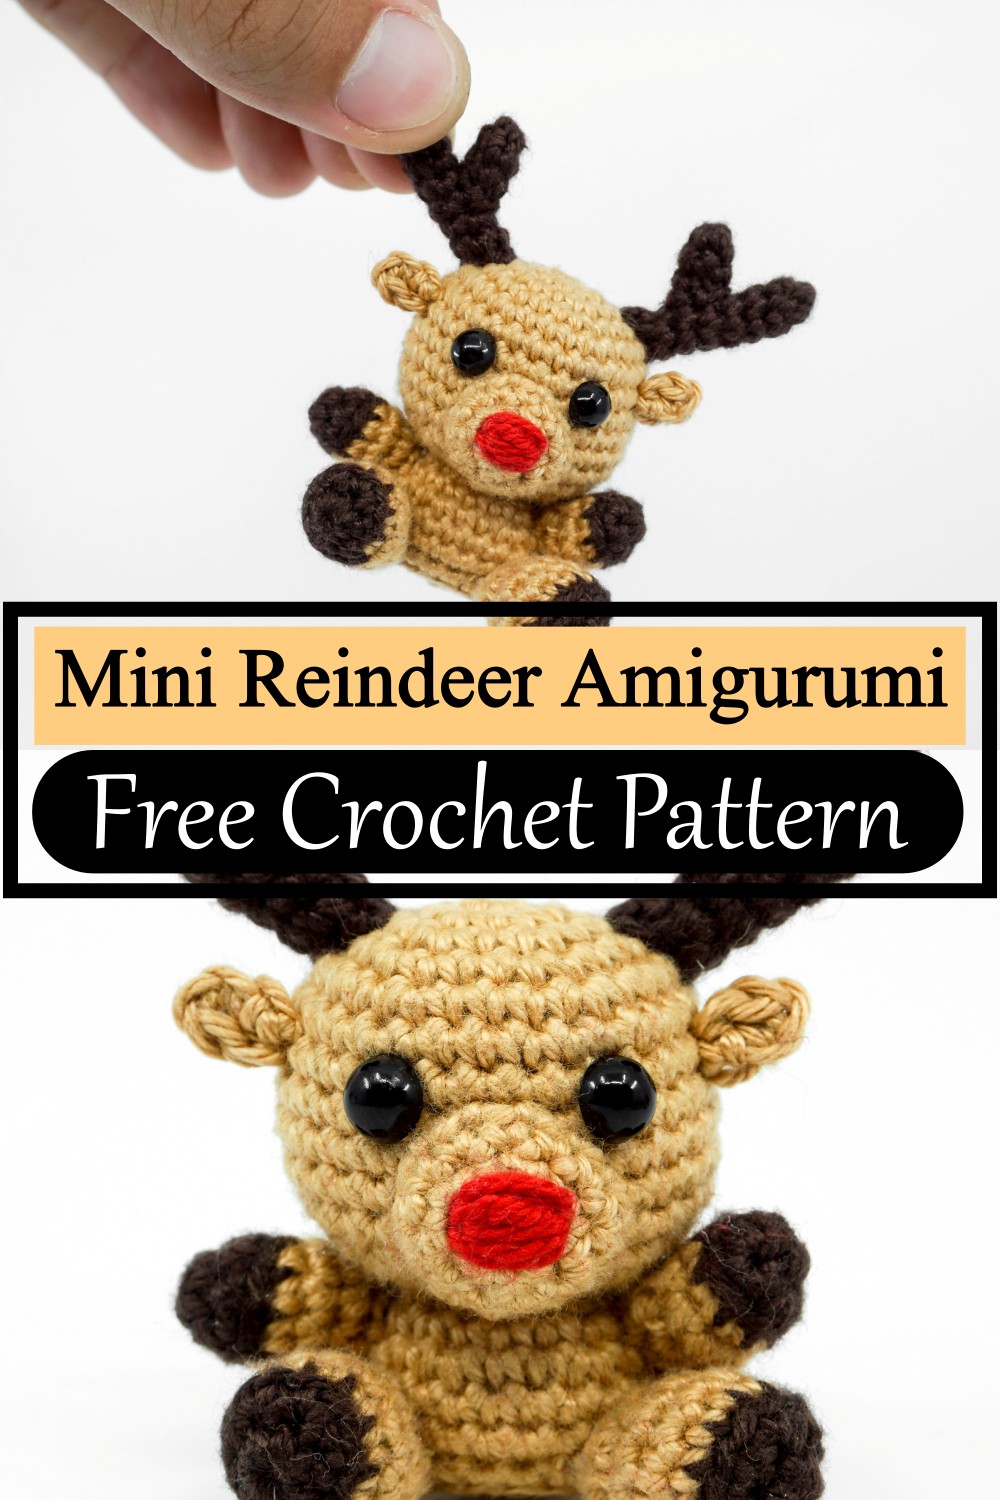 Mini Reindeer Amigurumi